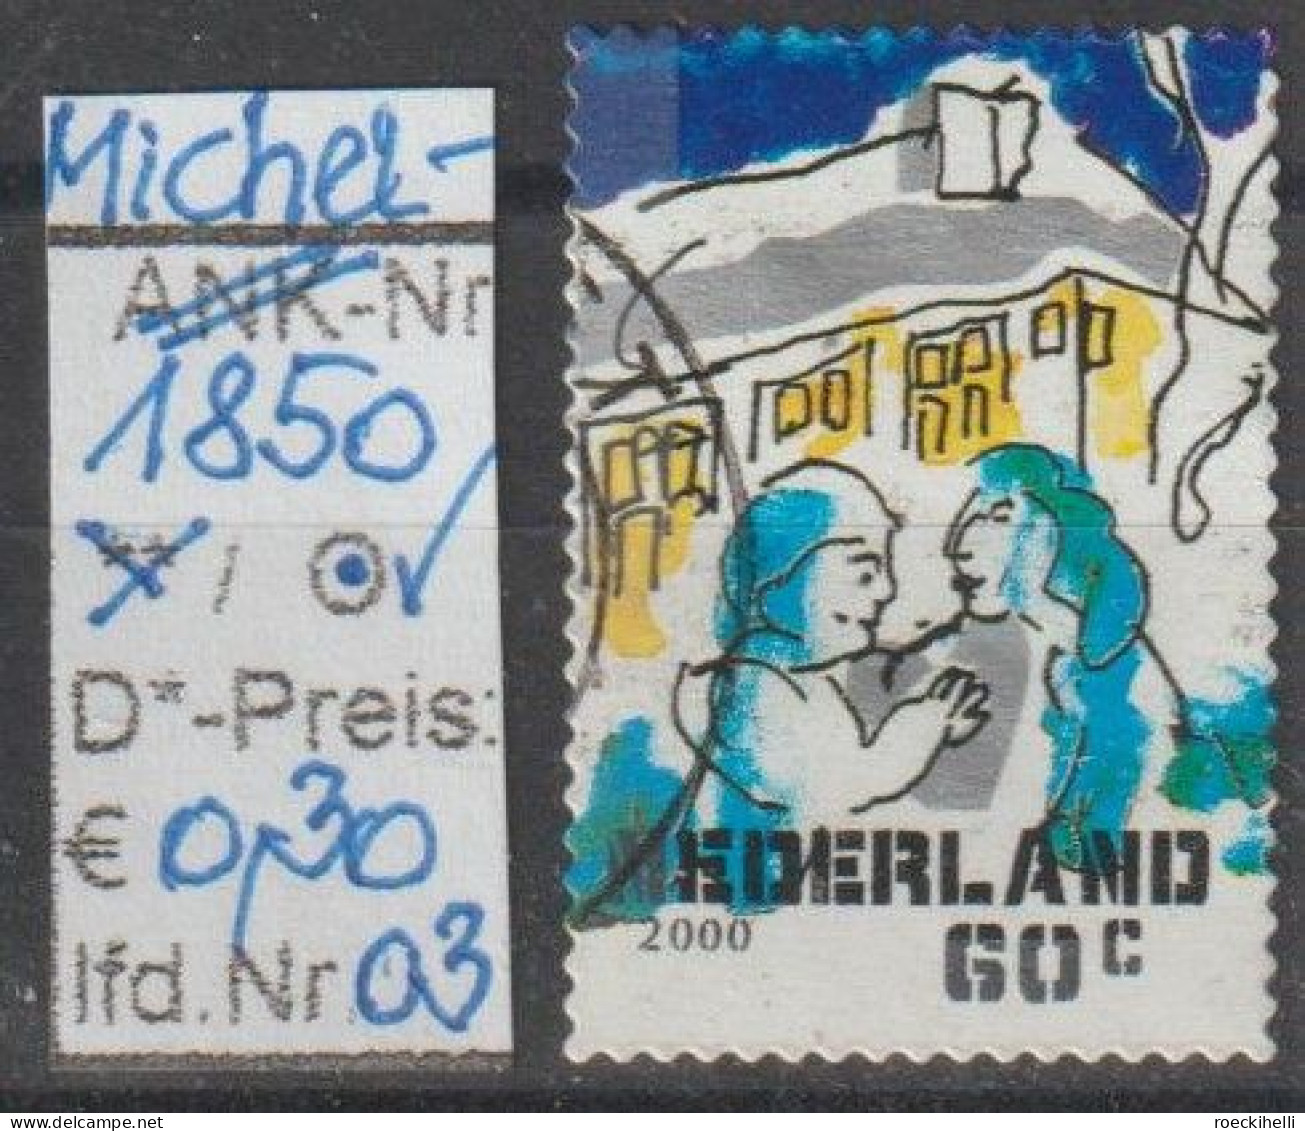 2000 - NIEDERLANDE - FM/DM "Dez.marken-Paar Vor Haus" 60 C Mehrf. - S. Scan  (1850o 01-03 Nl) - Gebruikt